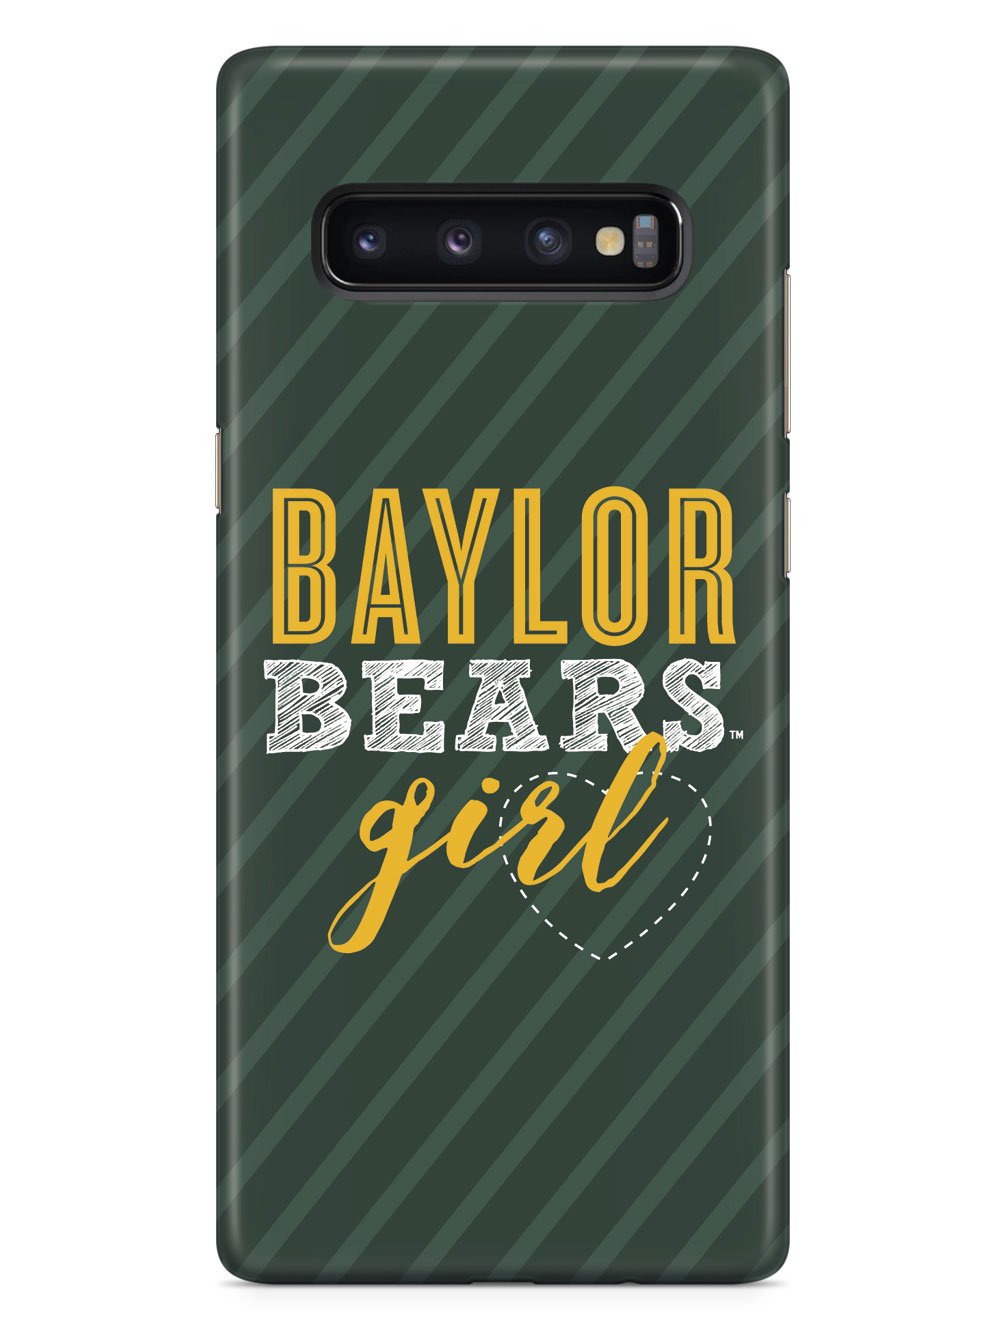 Baylor Bears Girl Case